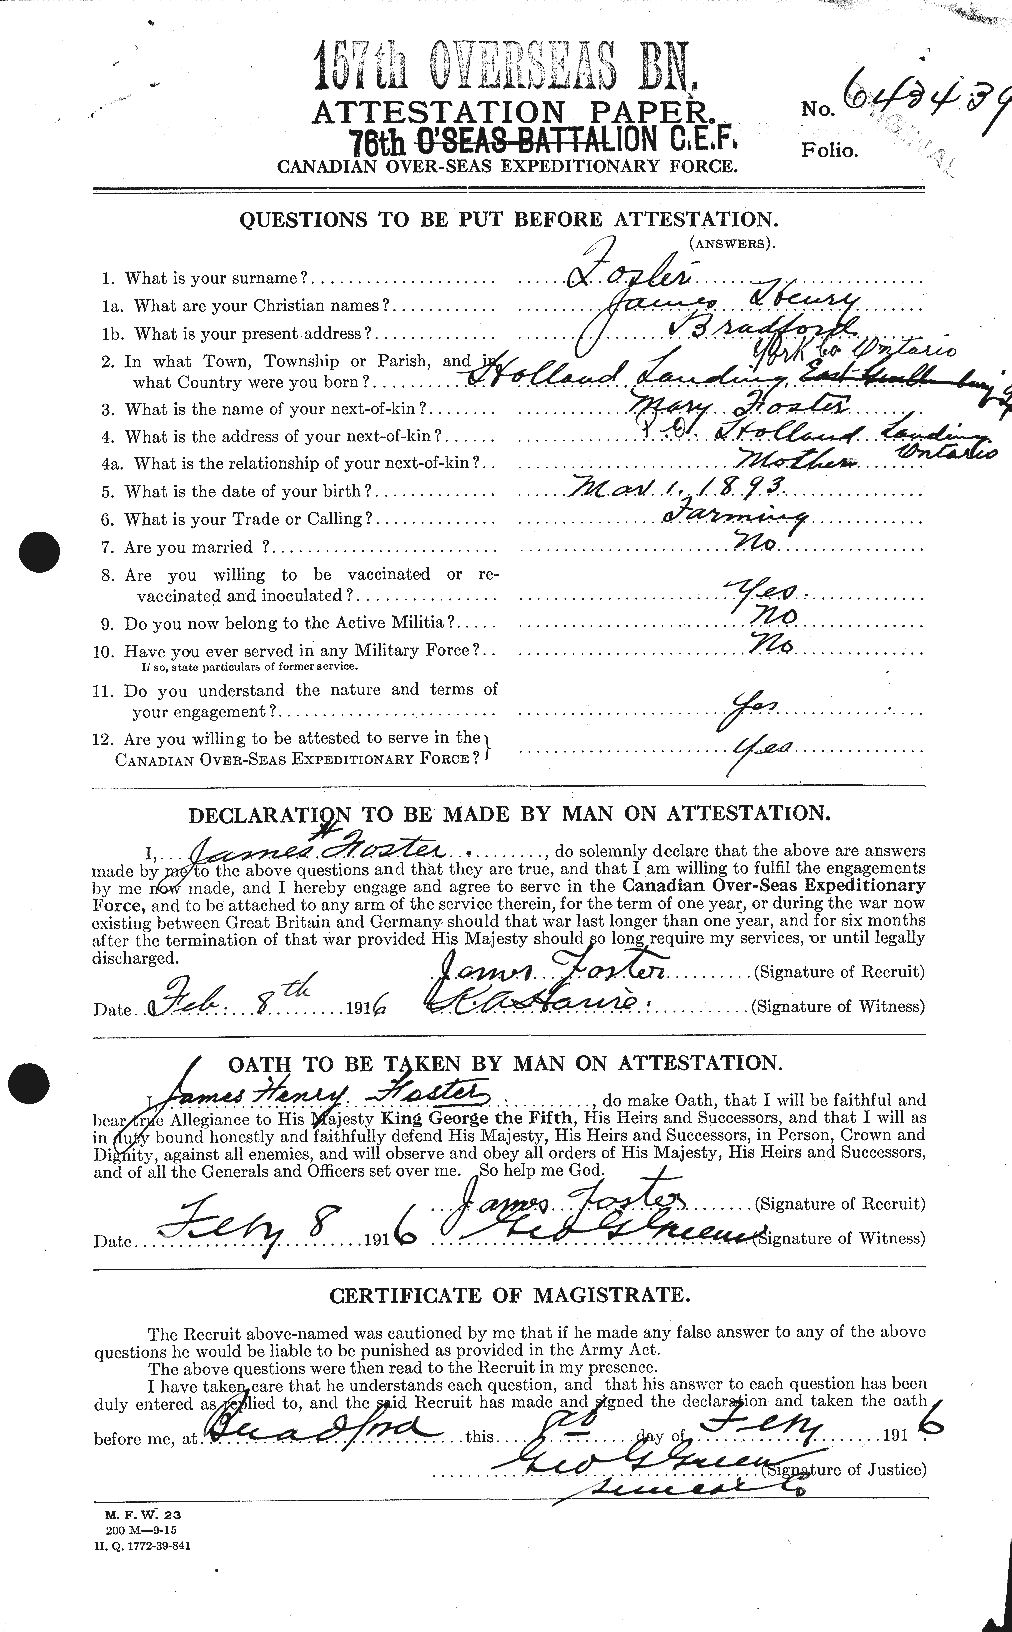 Dossiers du Personnel de la Première Guerre mondiale - CEC 333308a